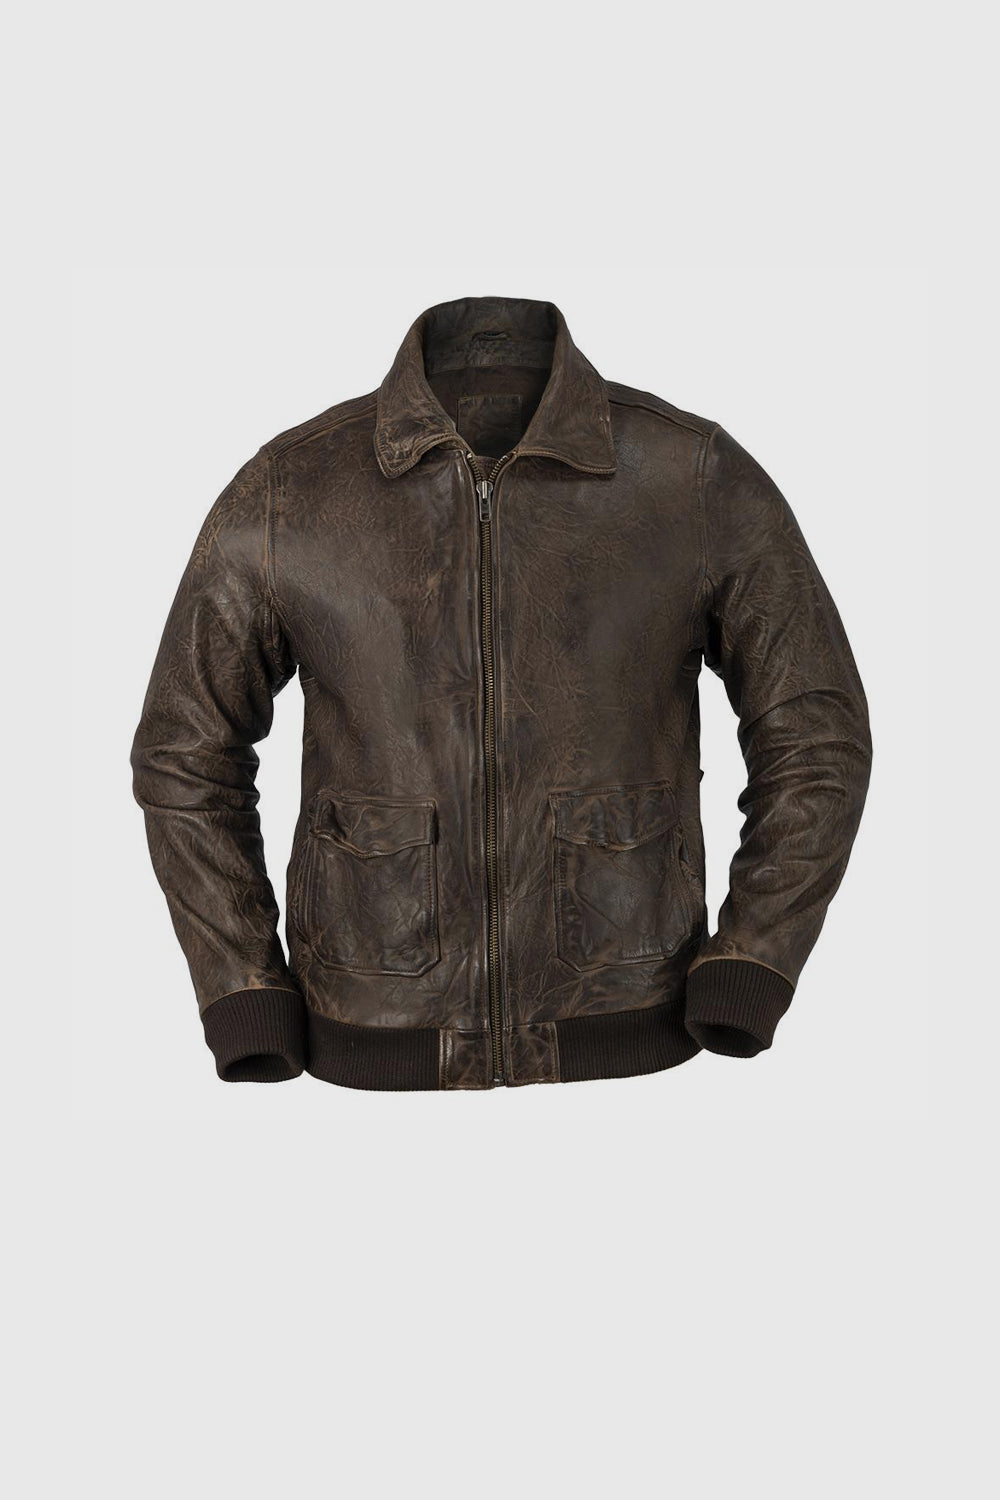 Duke - Men's Bomber Leather Jacket